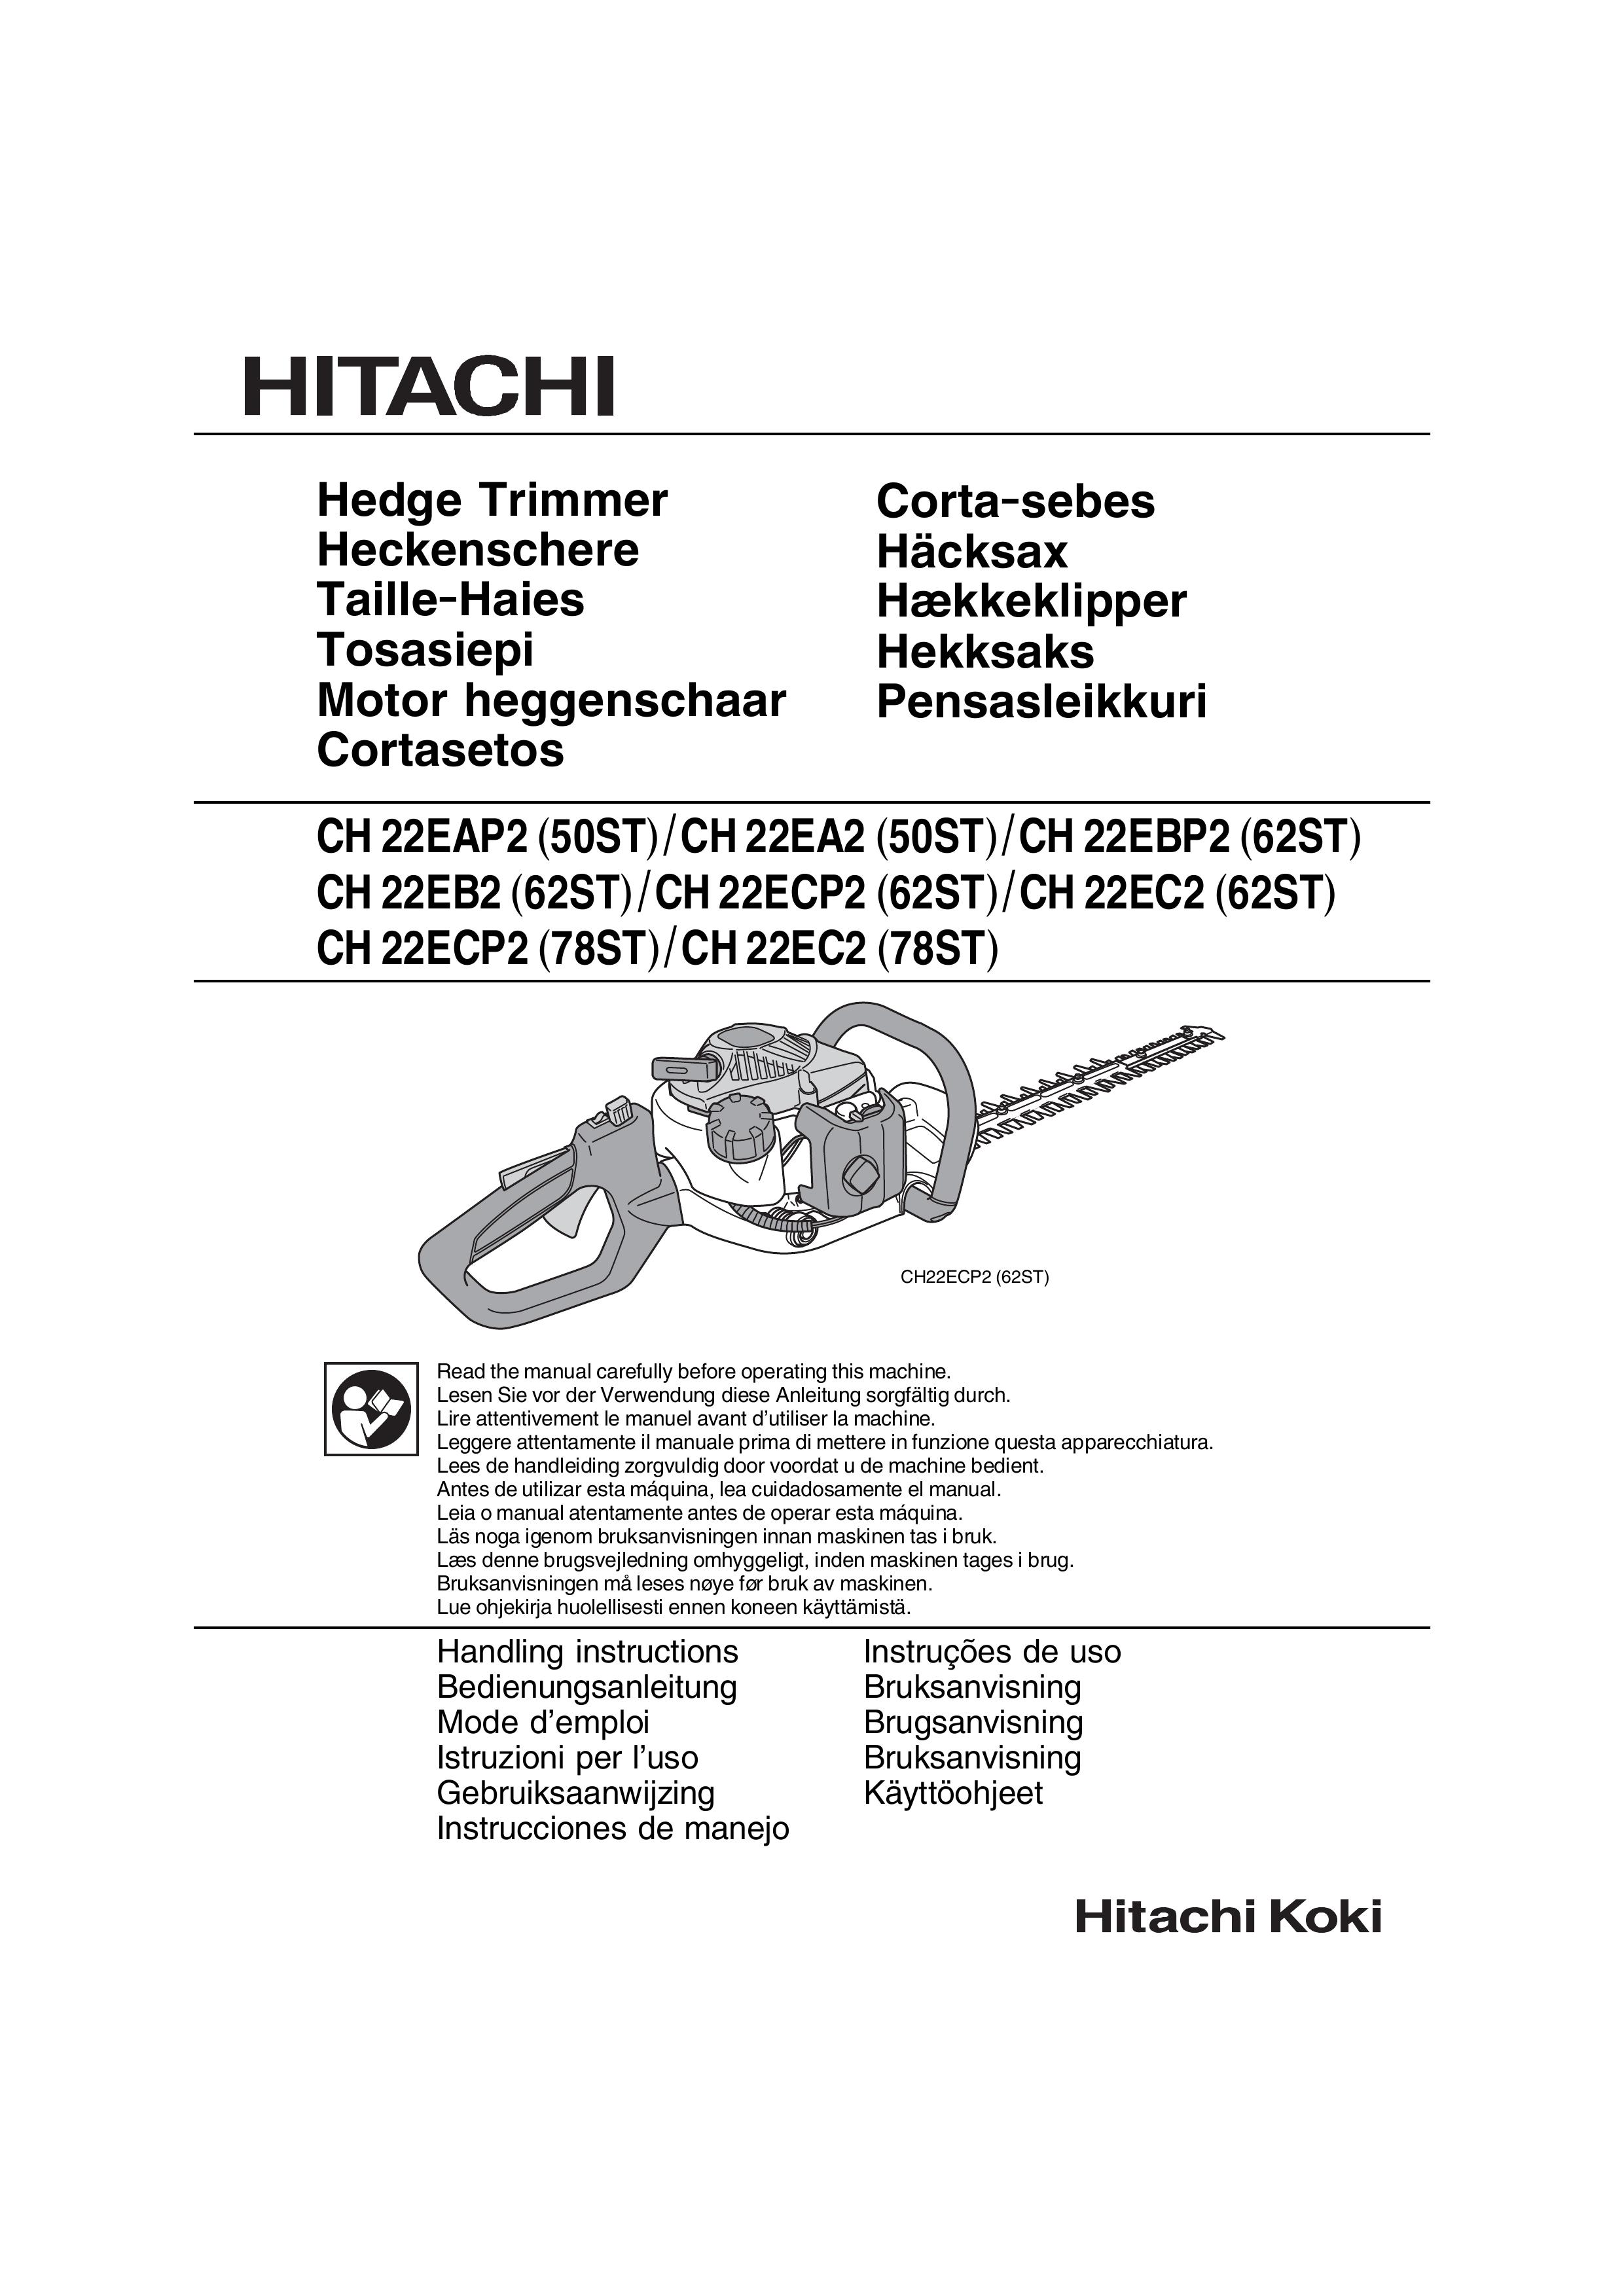 Hitachi CH 22ECP2 (62ST) Trimmer User Manual